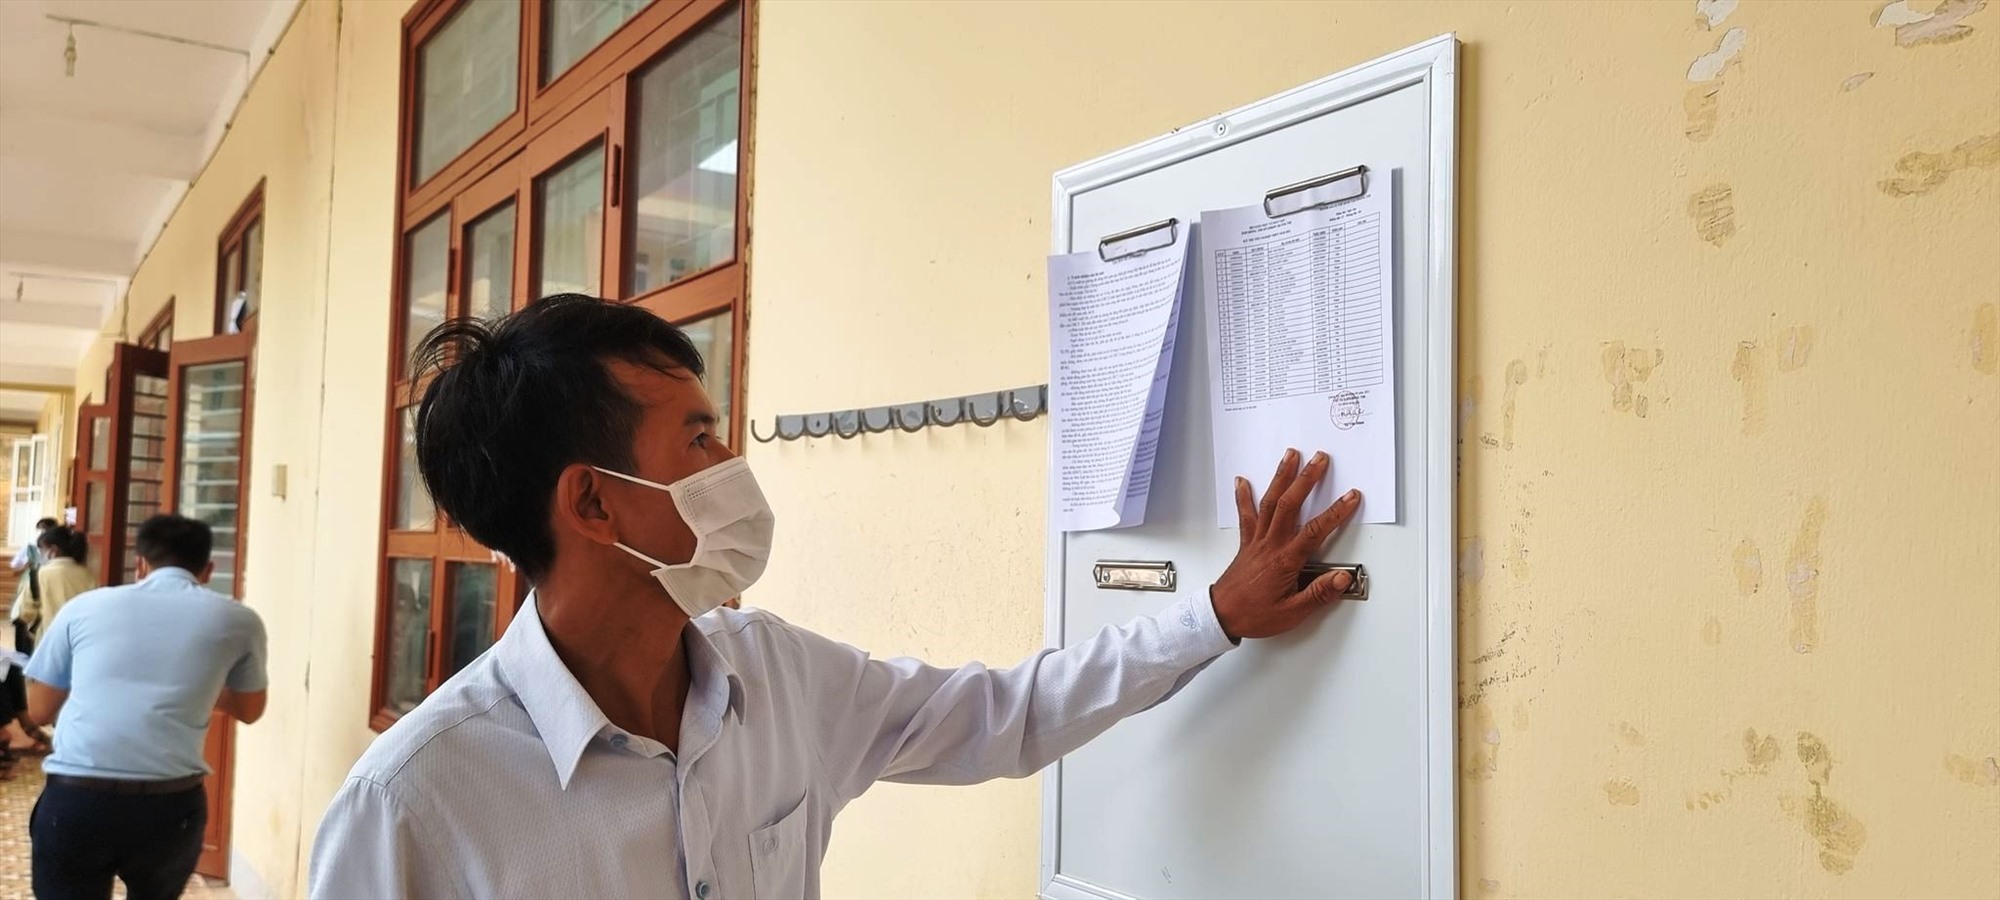 Anh Hồ Văn Man (31 tuổi tú thôn Chân Rò, xã Đakrông, huyện Đakrông) dự thi tốt nghiệp tại điểm thi Trường THPT Đakrông với quyết tâm đỗ tốt nghiệp để sau này tìm kiếm được công việc tốt hơn- Ảnh: ĐV